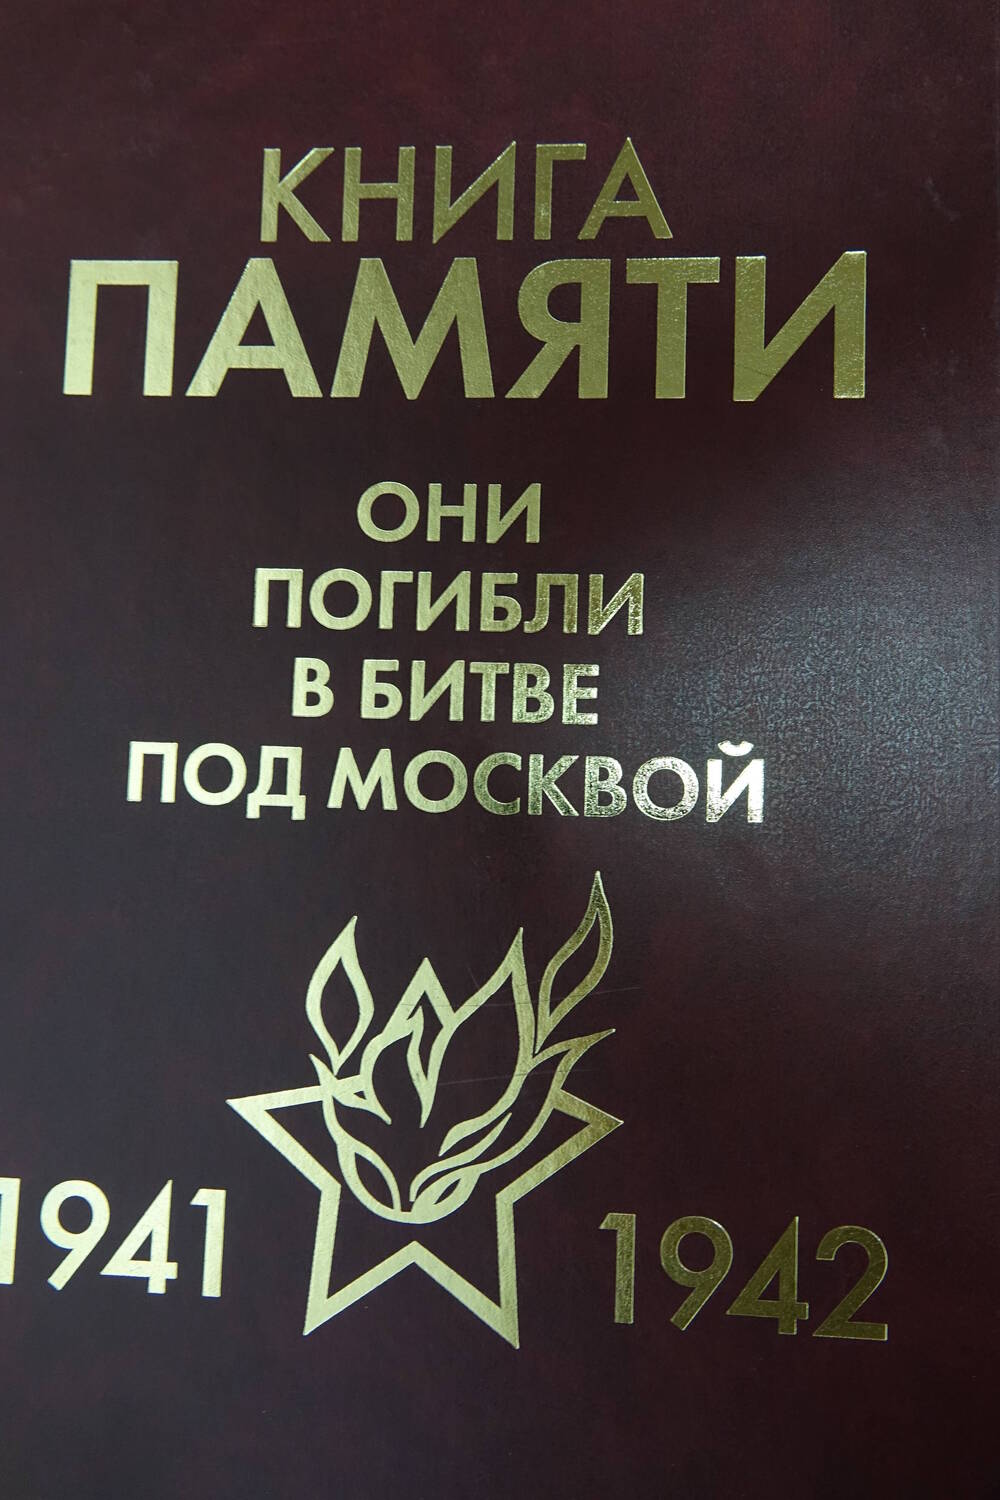 Книга Памяти «Они погибли в битве под Москвой   1941-1942гг.» Том 3 «В»